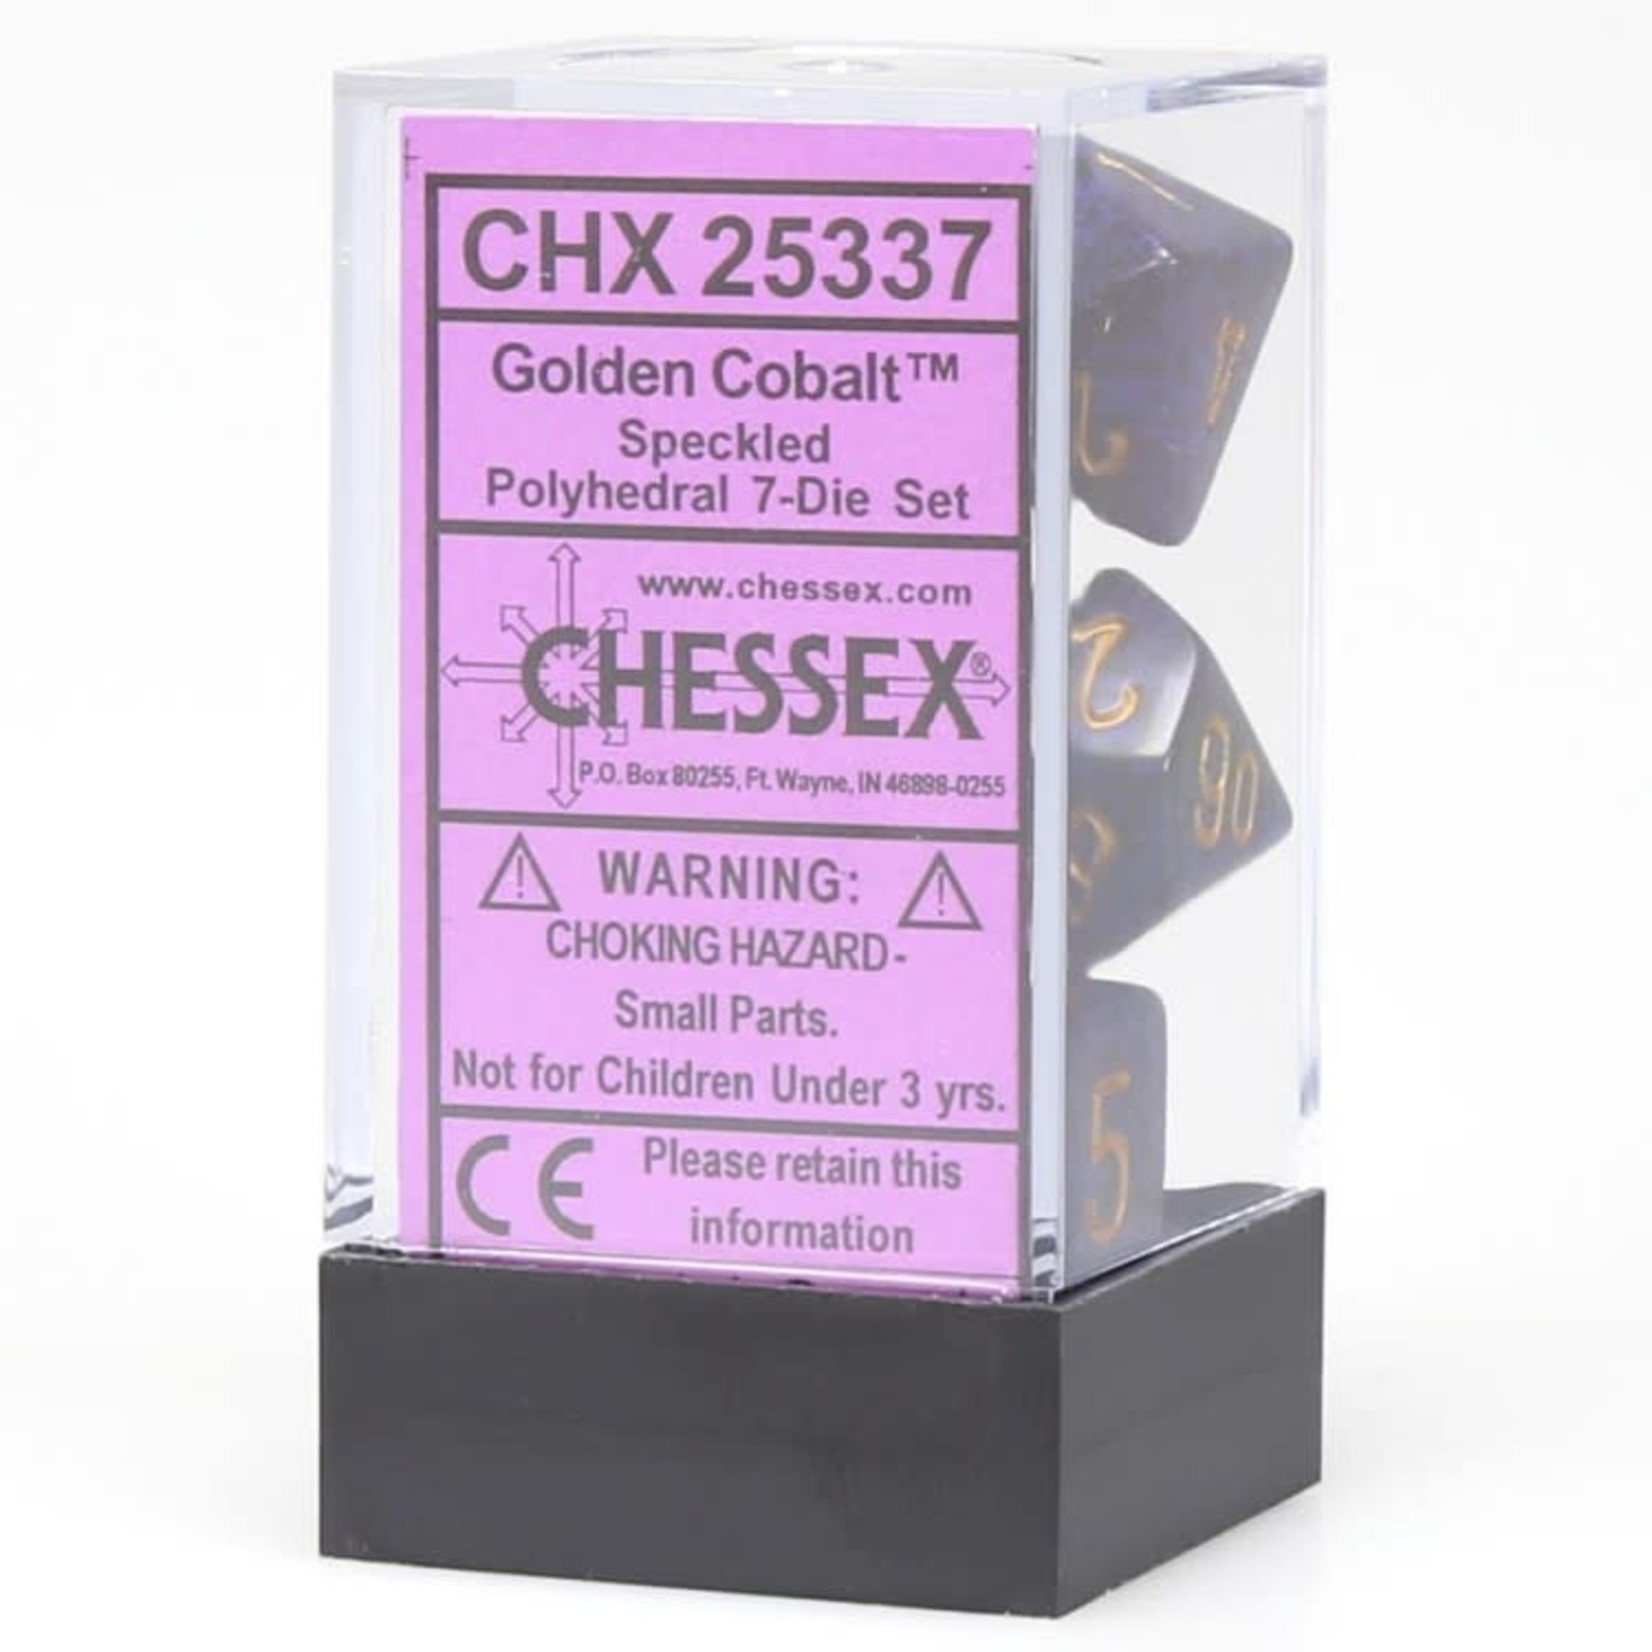 Chessex Chessex Speckled Golden Cobalt Polyhedral 7 die set